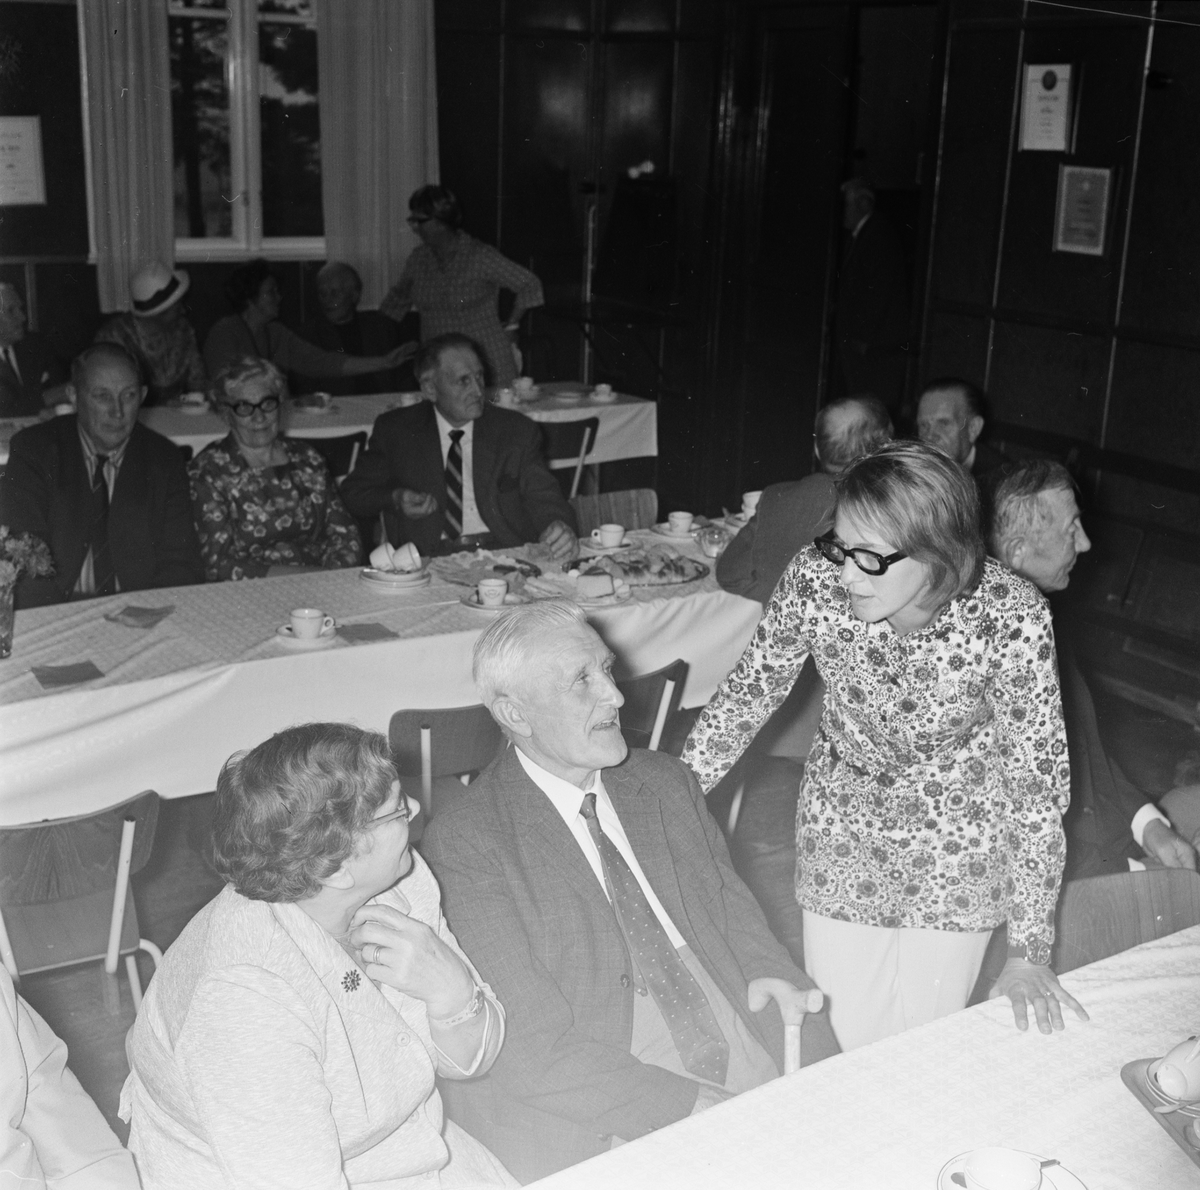 Vendelpensionärers möte, tillsammans med Eva Södergren, Vendels socken, Uppland september 1970